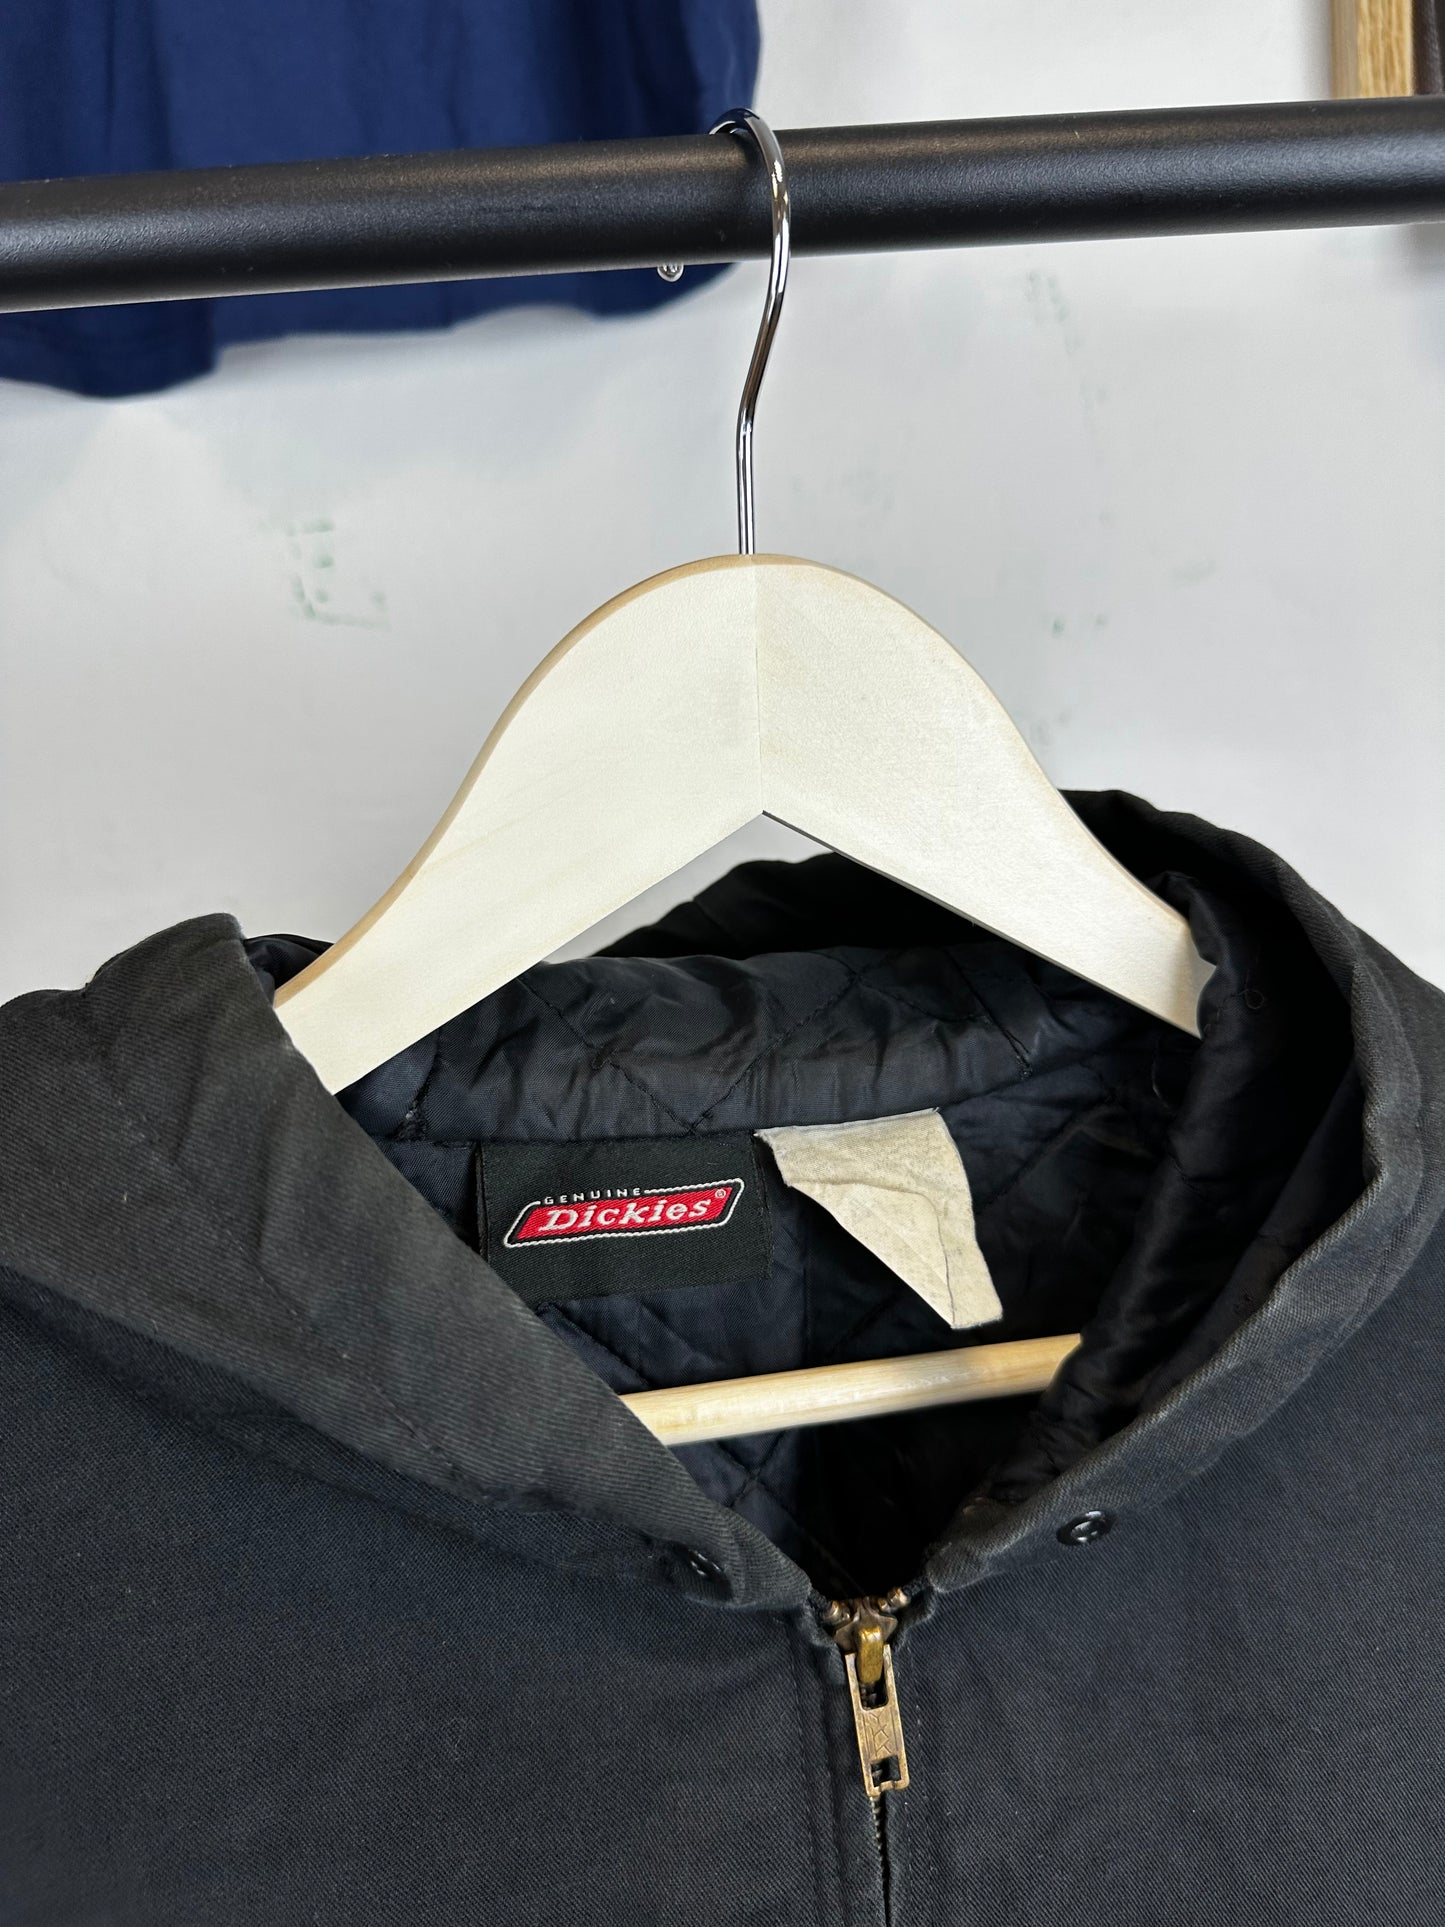 Vintage Dickies Hooded jacket - size M